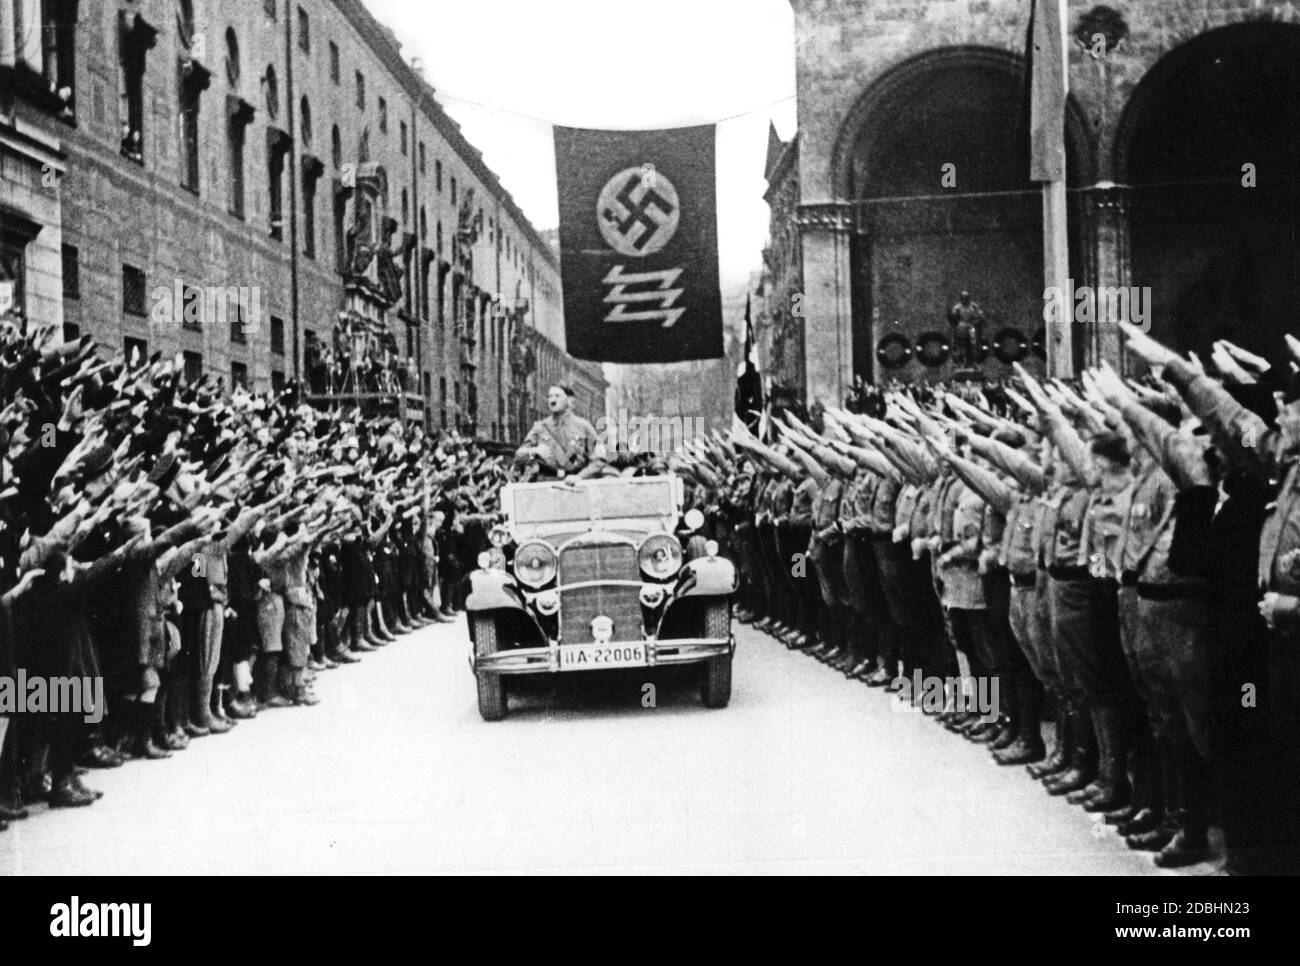 "Adolf Hitler und die NSDAP feiern die Erreichung ihrer Ziele am 9. November 1933, 10 Jahre nach dem gescheiterten Putsch. Hitler war in diesem Jahr Reichskanzler geworden. An der Stelle unter der Flagge mit Hakenkreuz und Wolfsangel, die im Hintergrund zu sehen ist, wurde eine Gedenktafel zu Ehren der Märtyrer vom 9. November 1923 angebracht, die nur durch das Angrüßen mit dem Nazi-Gruß übergeben werden konnte. Ab diesem Zeitpunkt wurde der 9. November zum nationalsozialistischen Feiertag, in dessen Rahmen der traditionelle marsch vom Bürgerbraeukeller am Wiener Platz über die Ludwigsbrücke stattfand Stockfoto